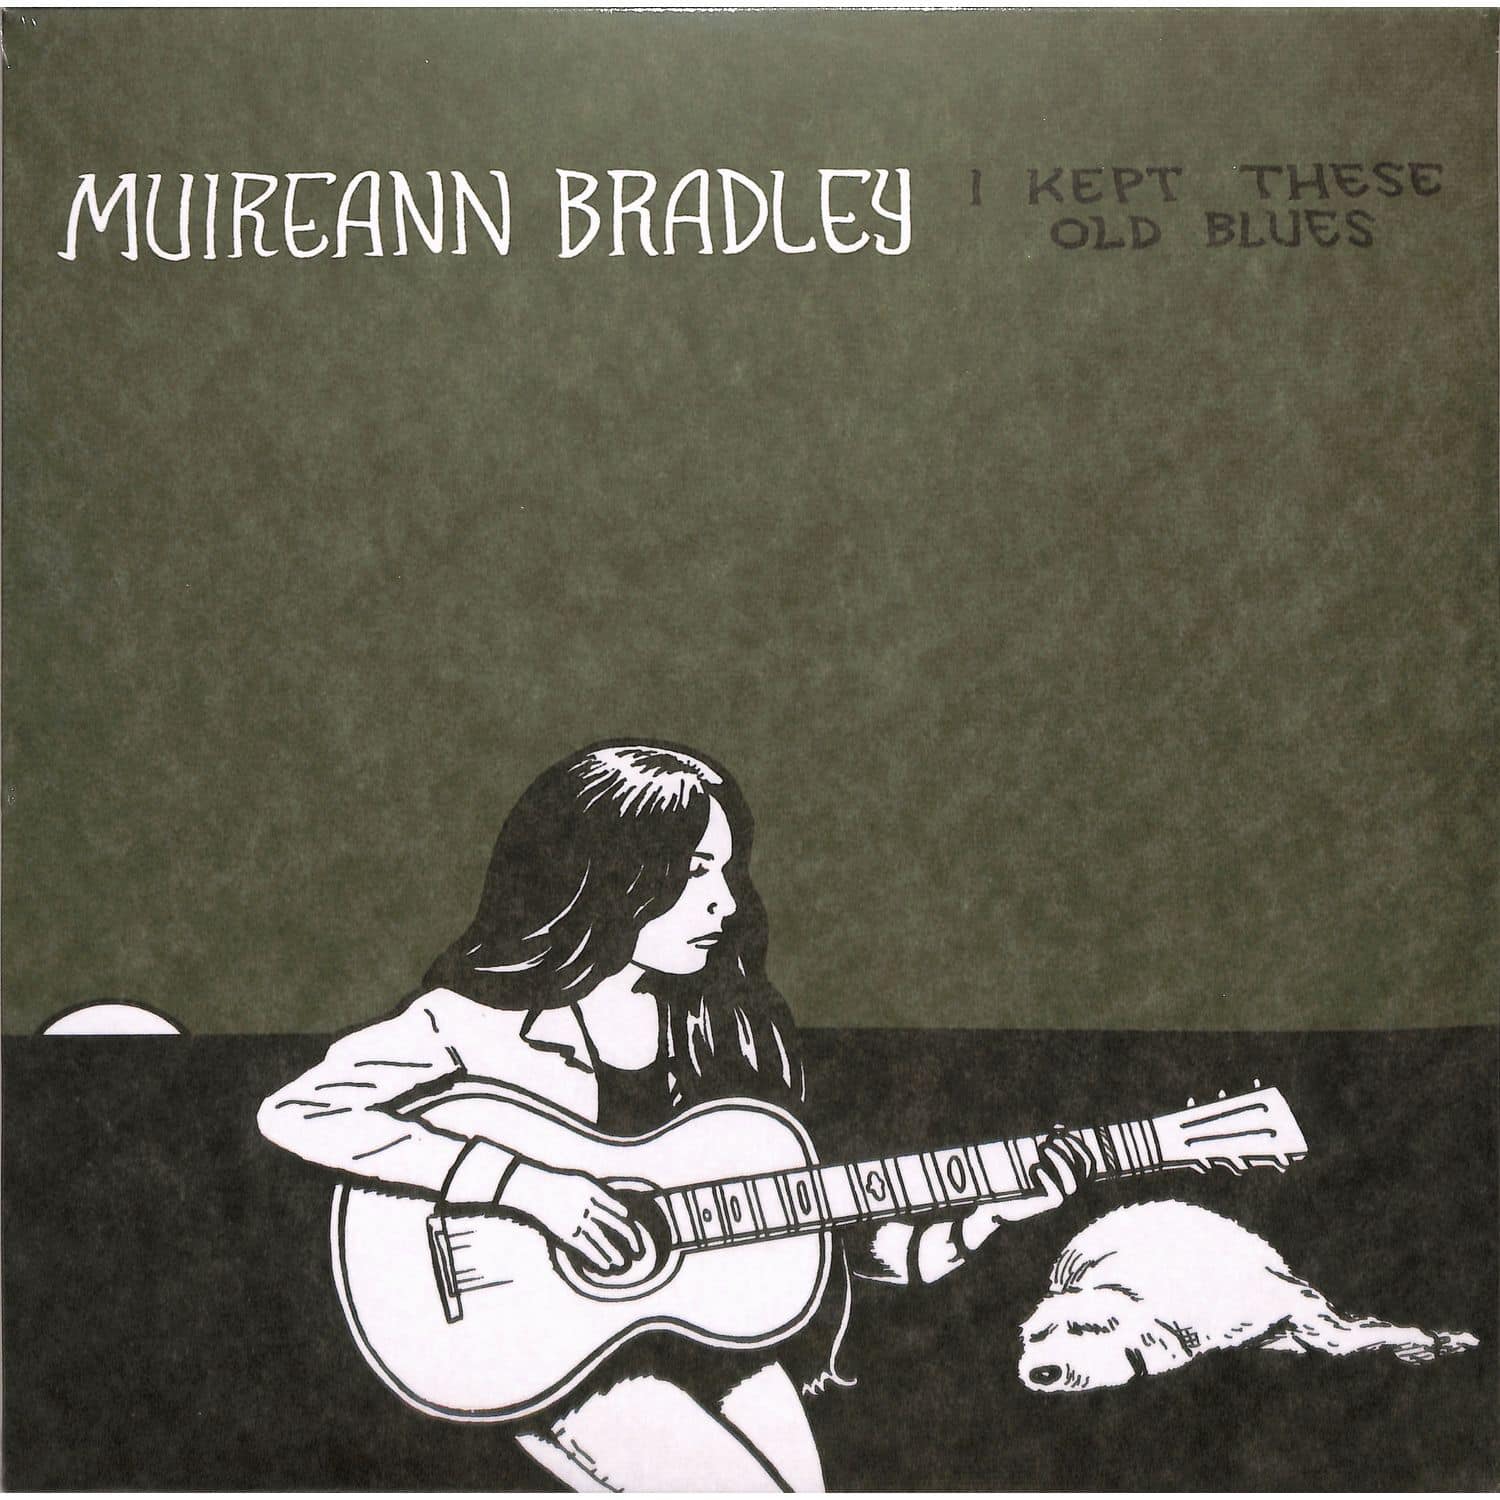 Muireann Bradley - I KEPT THESE OLD BLUES 